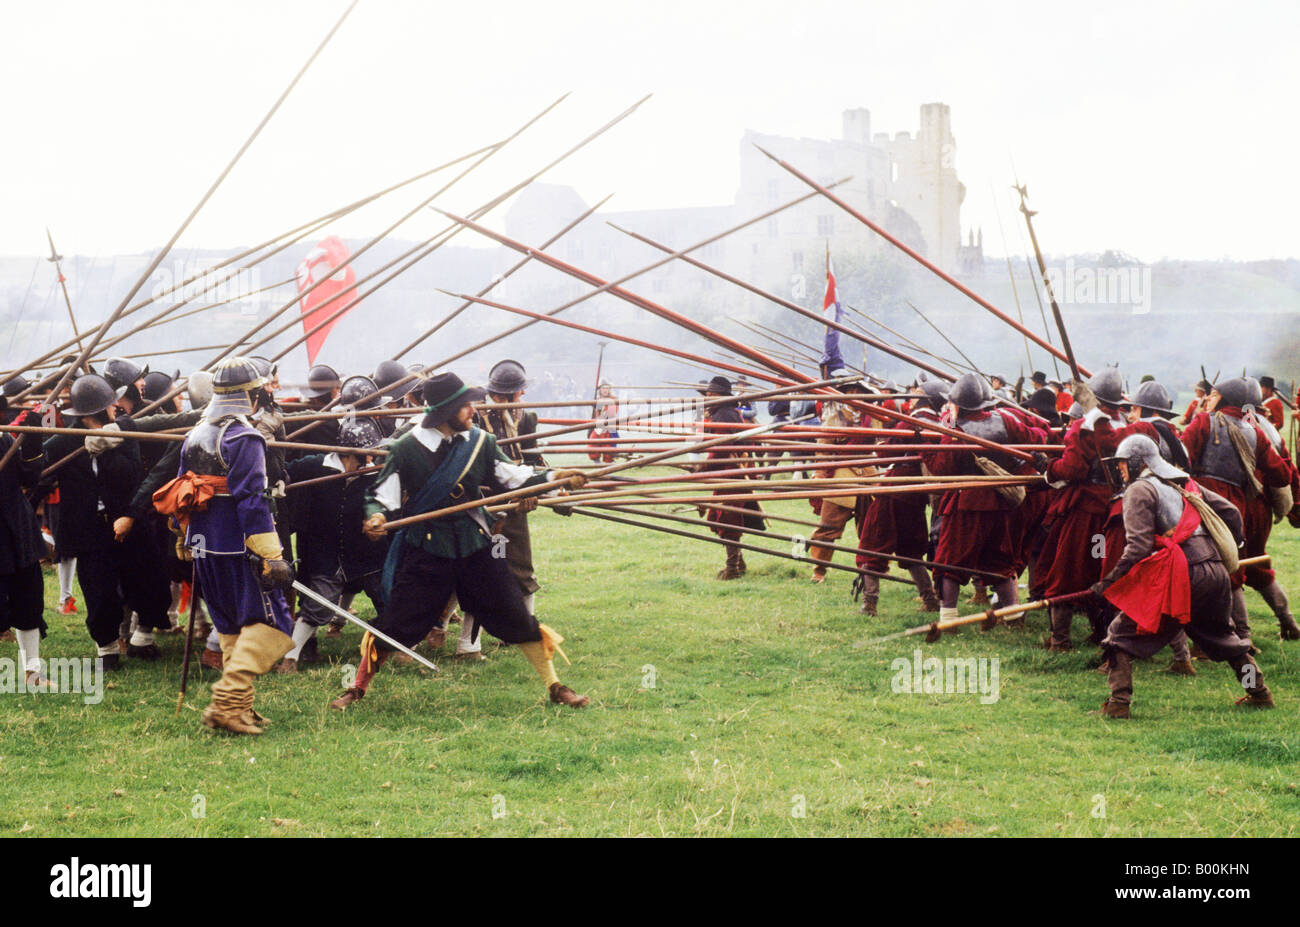 Rievocazione storica pikemen Guerra Civile Inglese Helmsley Castle Yorkshire England Regno Unito pikes battaglia Cromwell Cromwellian battaglia Foto Stock